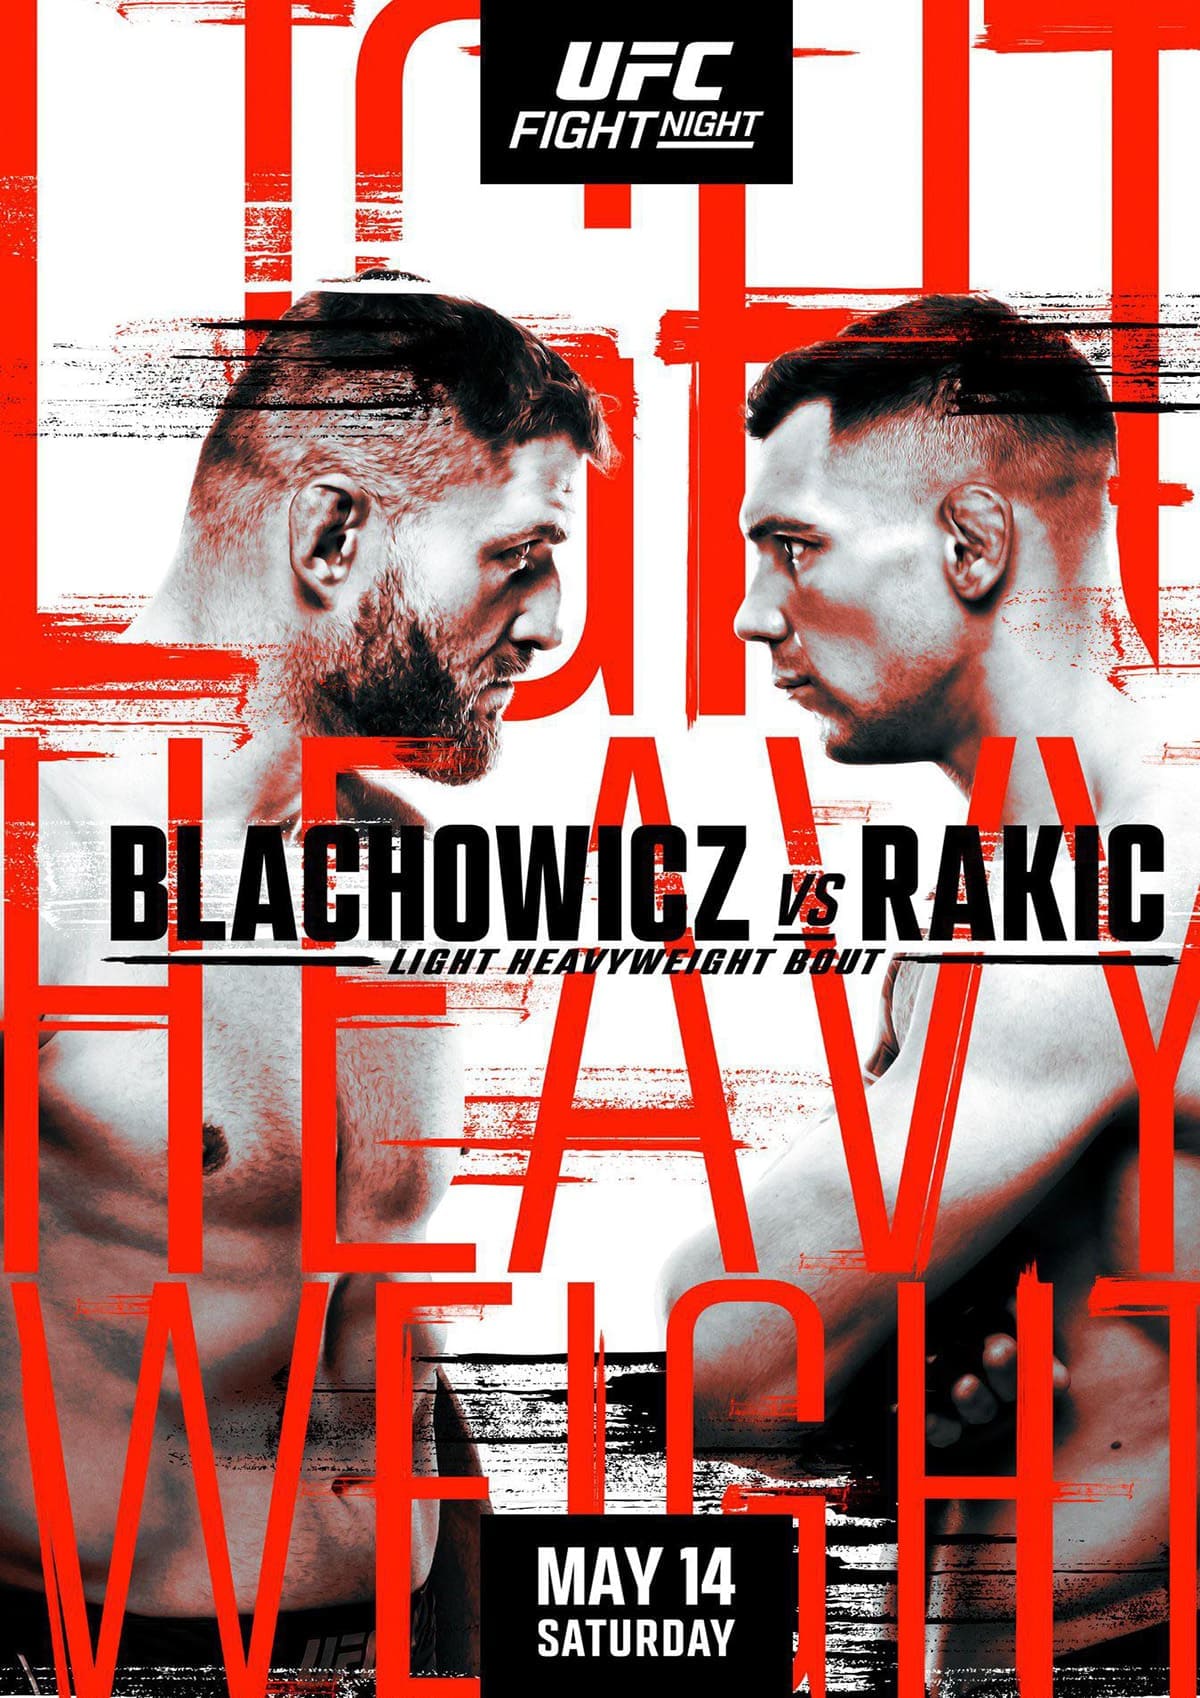 UFC on ESPN 36: Блахович - Ракич дата проведения, кард, участники и результаты